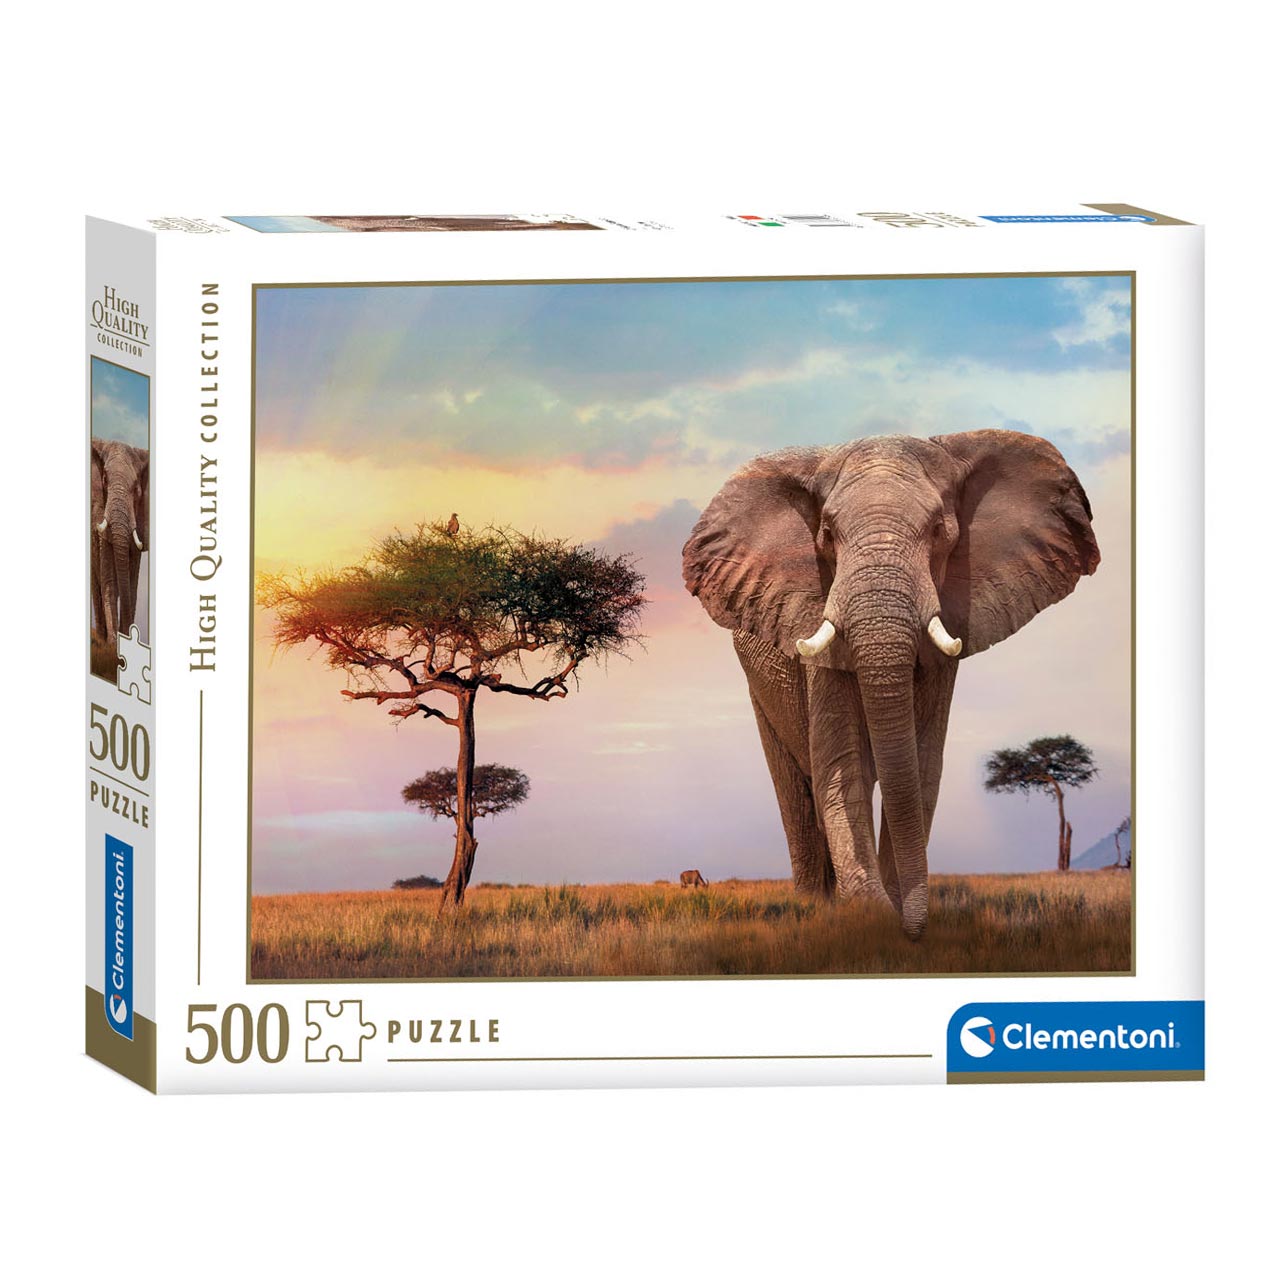 Clementoni Puzzle Lever de soleil africain, 500 pièces.